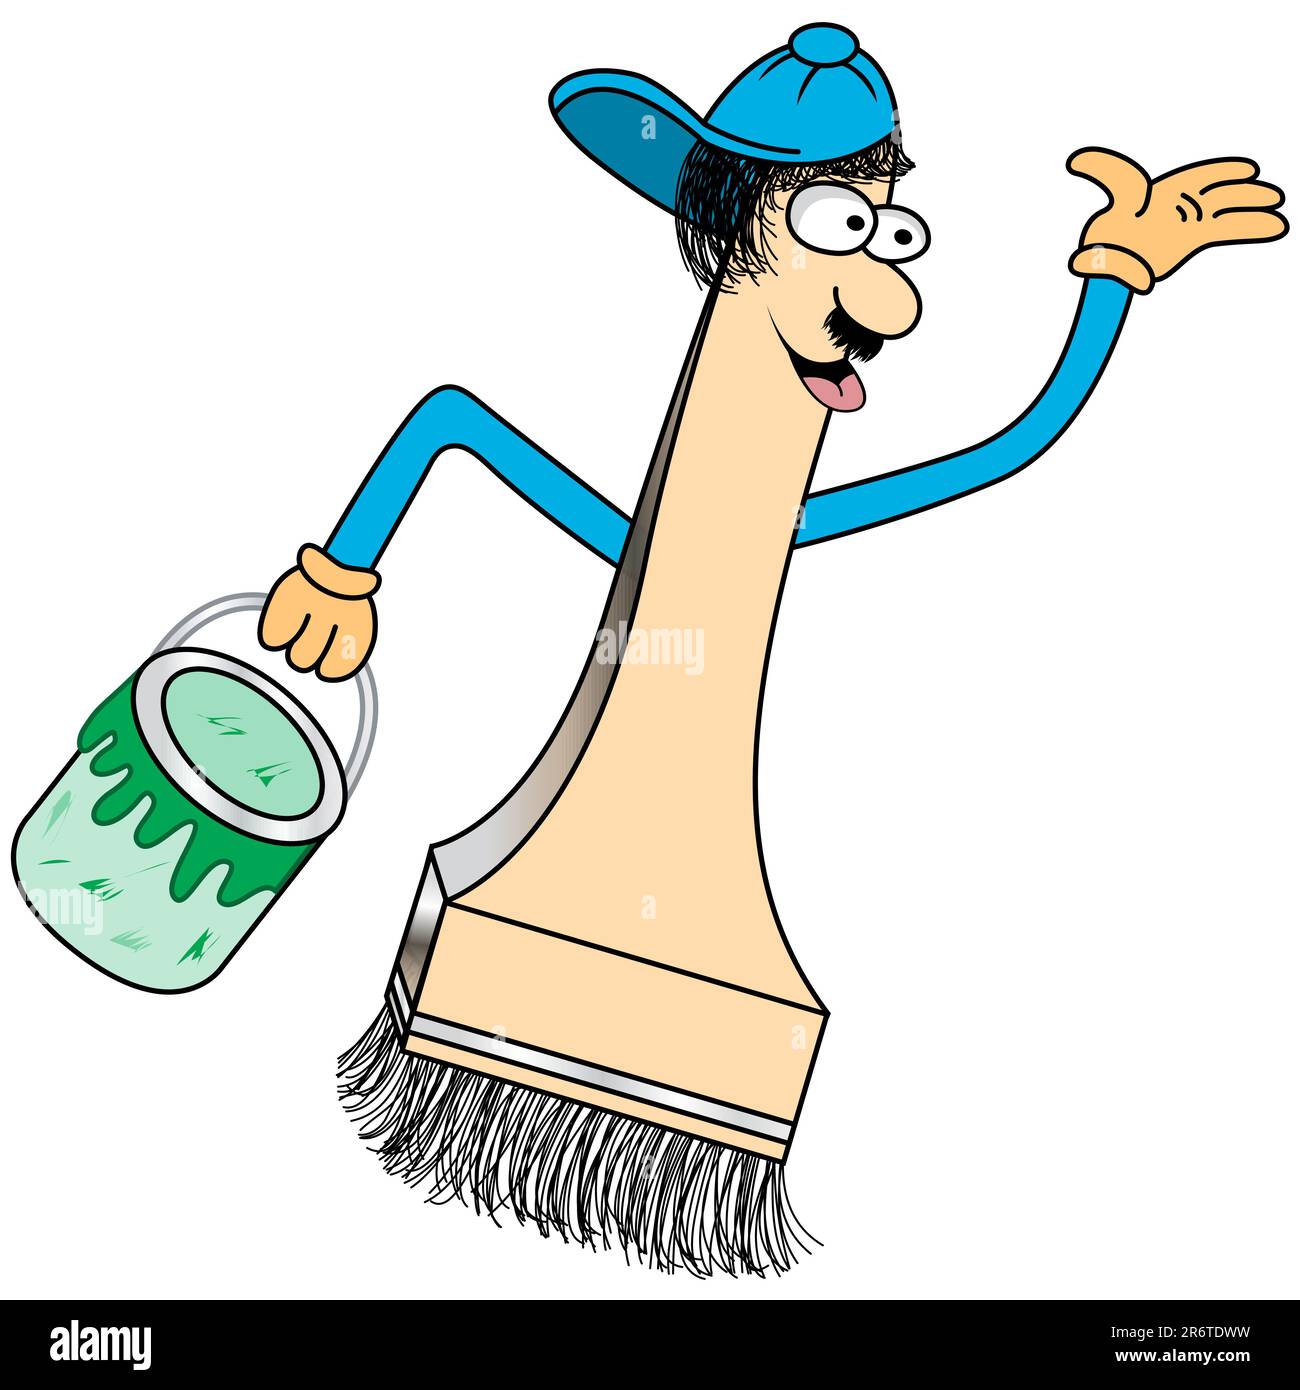 Peignez le personnage de dessin animé avec un visage drôle et une casquette de baseball tenant un pot vert de peinture. Illustration de Vecteur